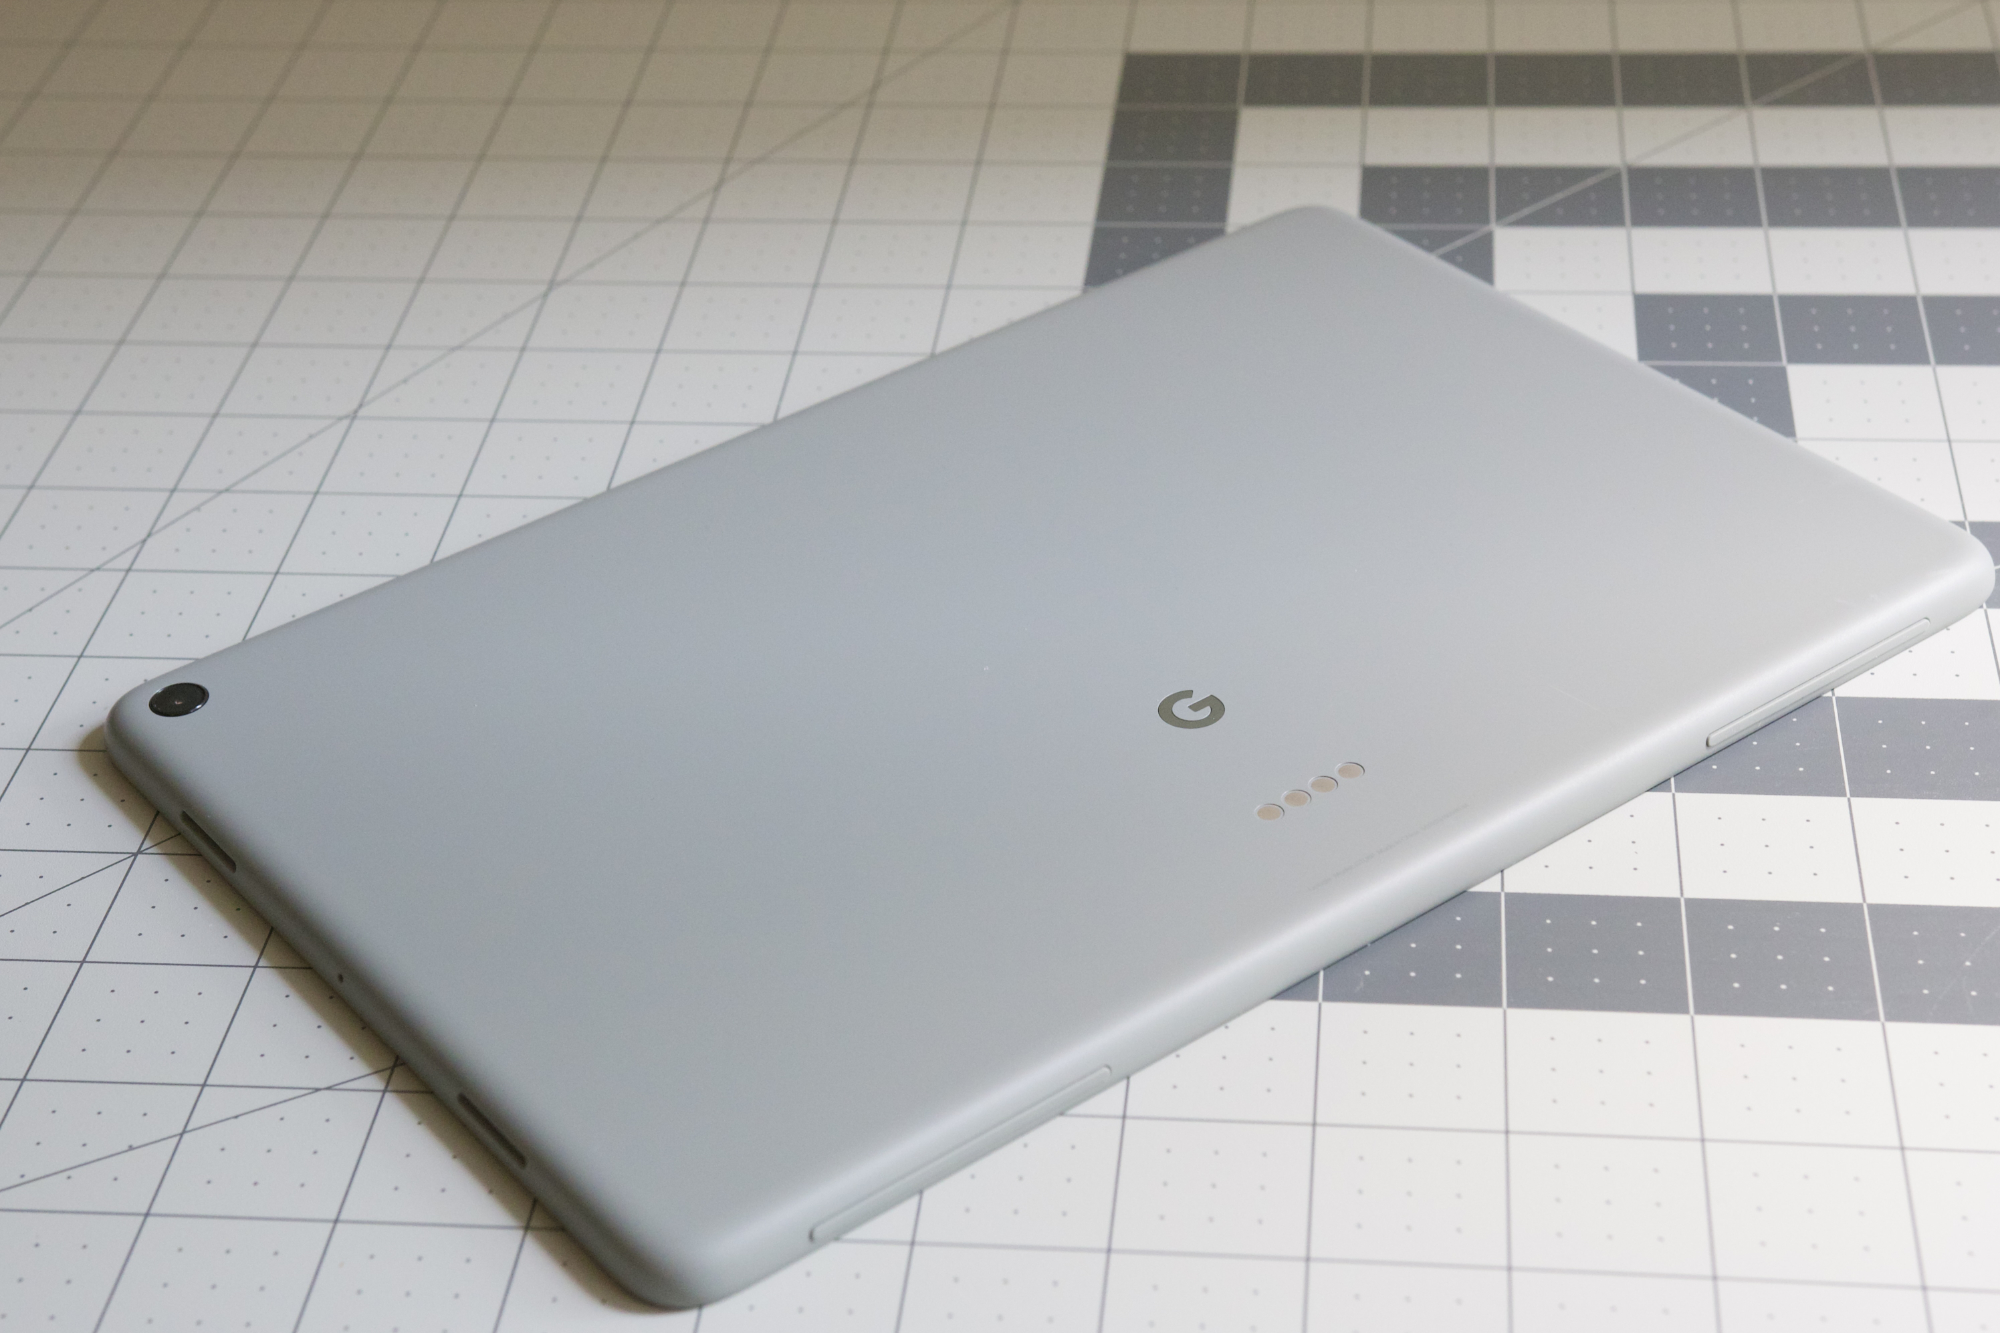 डेस्क पर Google Pixel टैबलेट, जिसका पिछला भाग दिखाई दे रहा है।